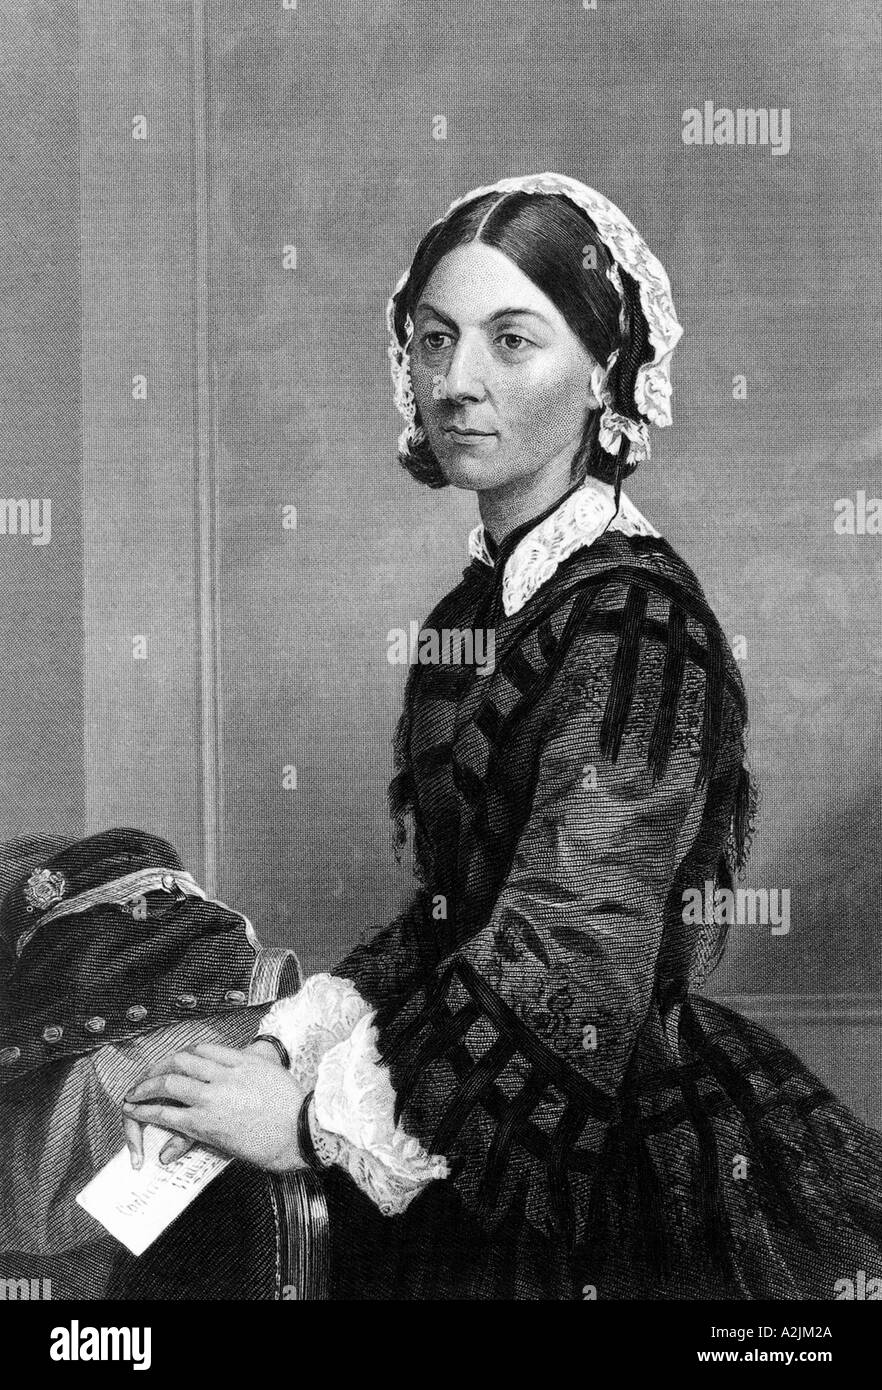 FLORENCE NIGHTINGALE, enfermera inglesa 1820 1910 que sentaron las bases de la enfermería moderna Foto de stock